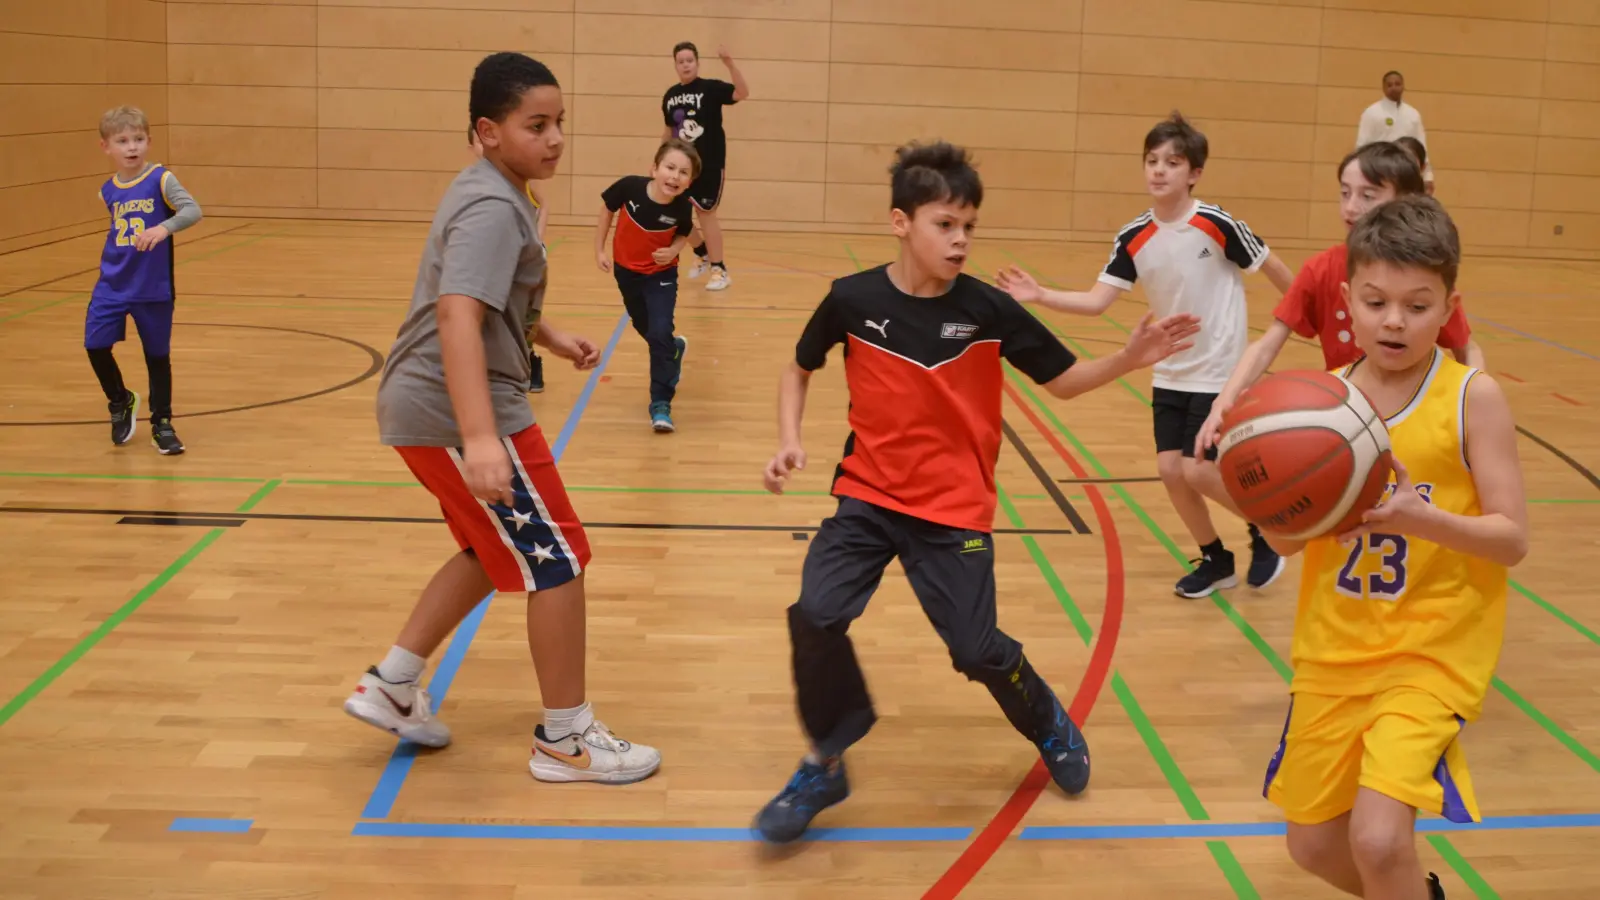 Die Basketball-Abteilung der SBU ist beliebt, immer mehr junge Sportler finden ihren Weg in die Uffenheimer Halle. Teilweise reisen sie sogar länger an – beispielsweise aus Rothenburg. (Foto: Johannes Zimmermann)